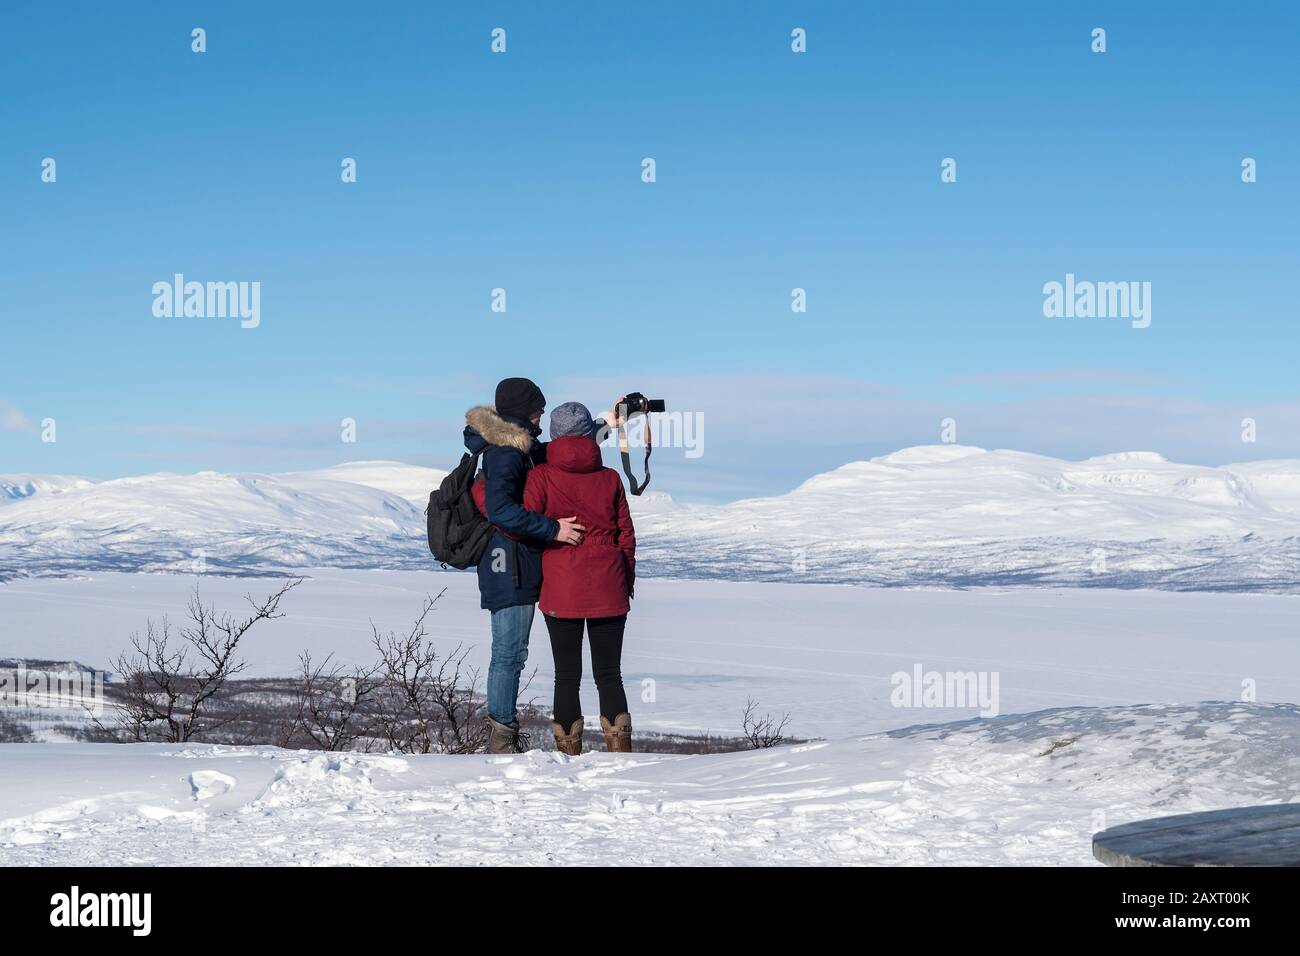 Suède, Laponie, point de vue, vue de la gelée Torneträsk, couple prenant des photos Banque D'Images